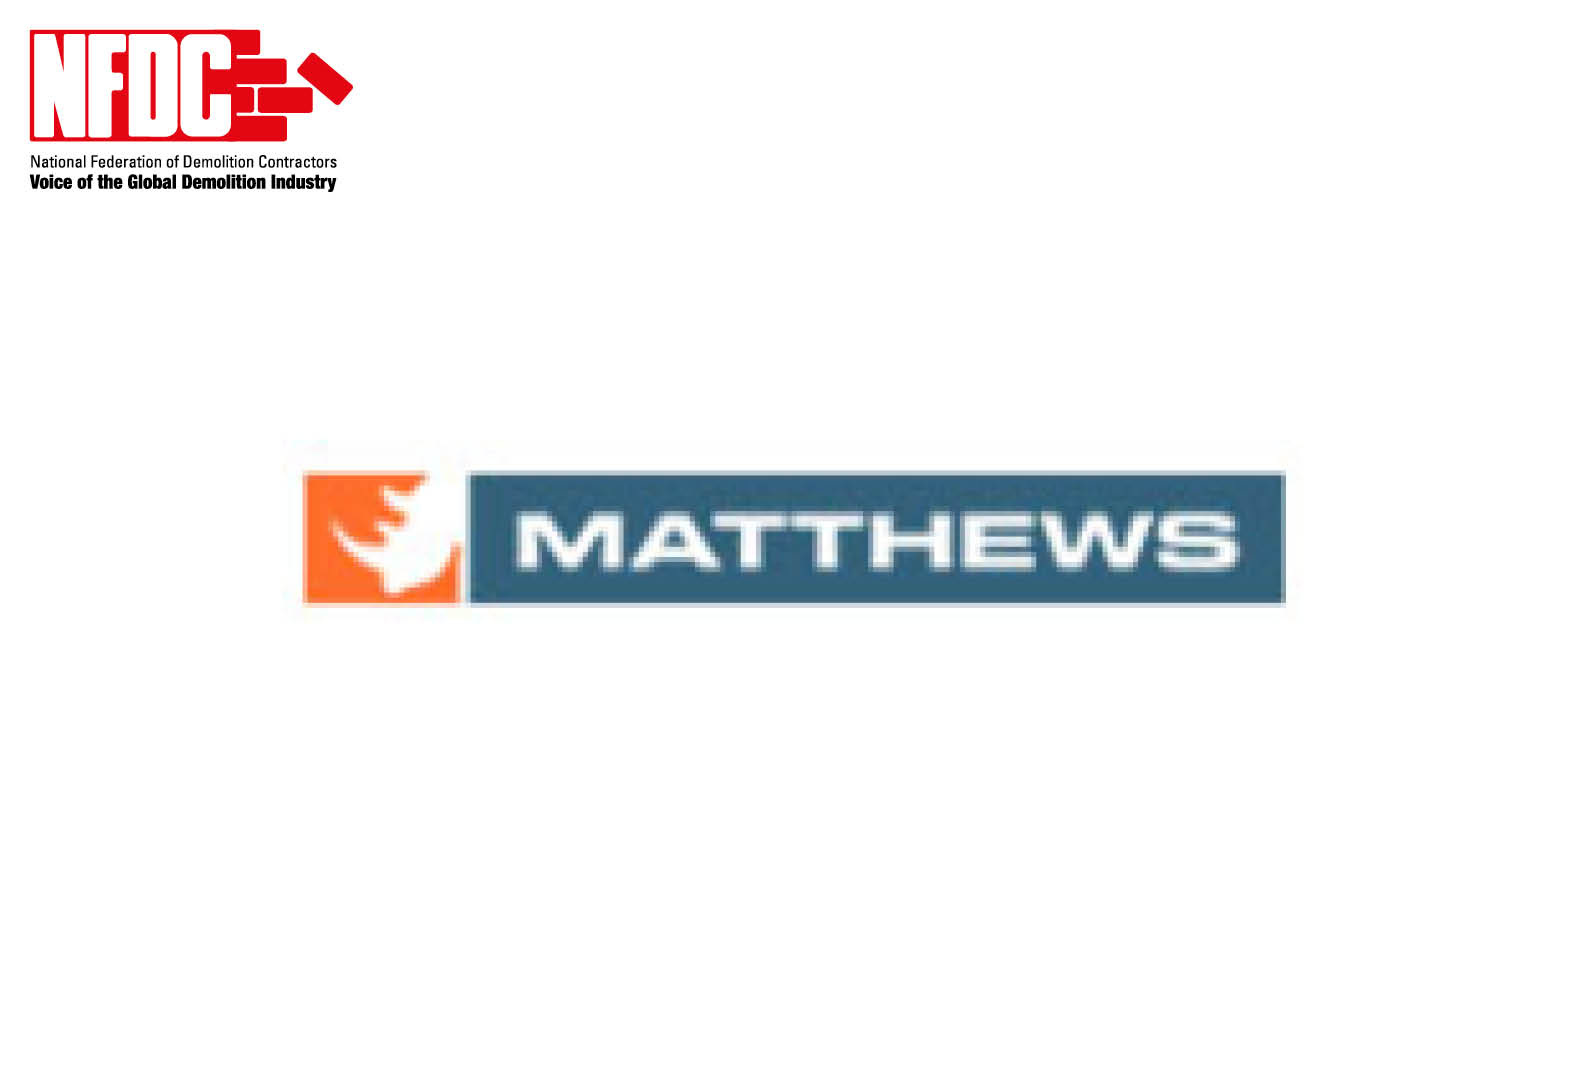 Matthews (Sussex) Ltd